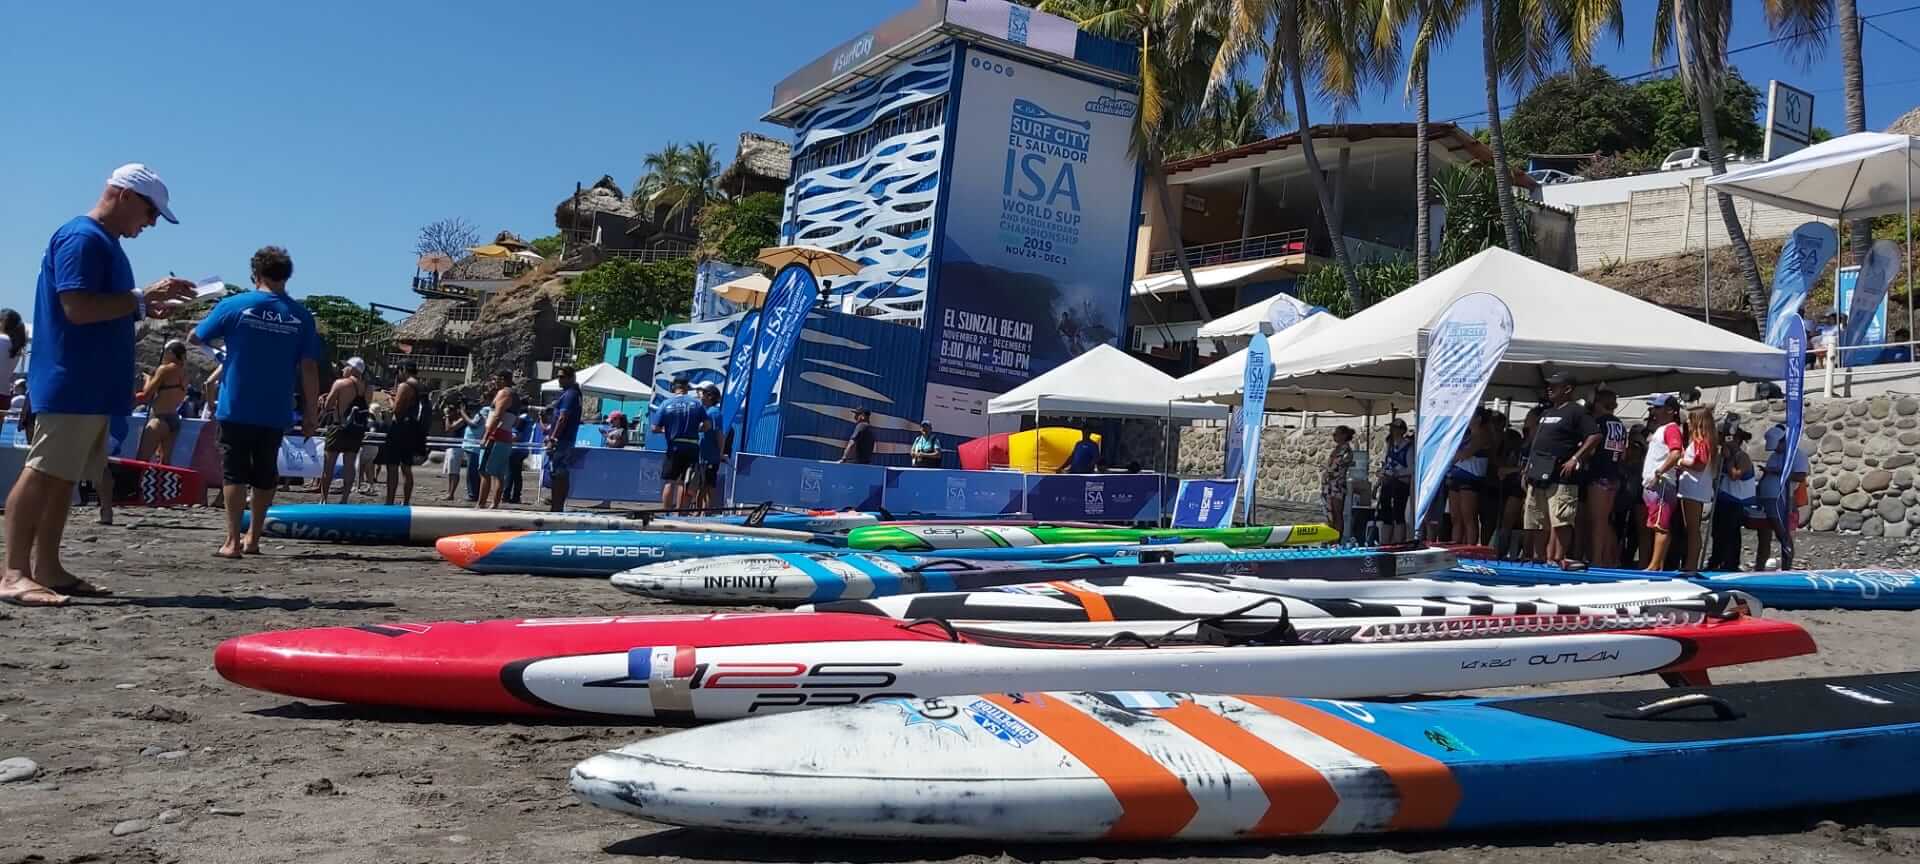 2019 Surf City El Salvador ISA World SUP and Paddleboard Championship